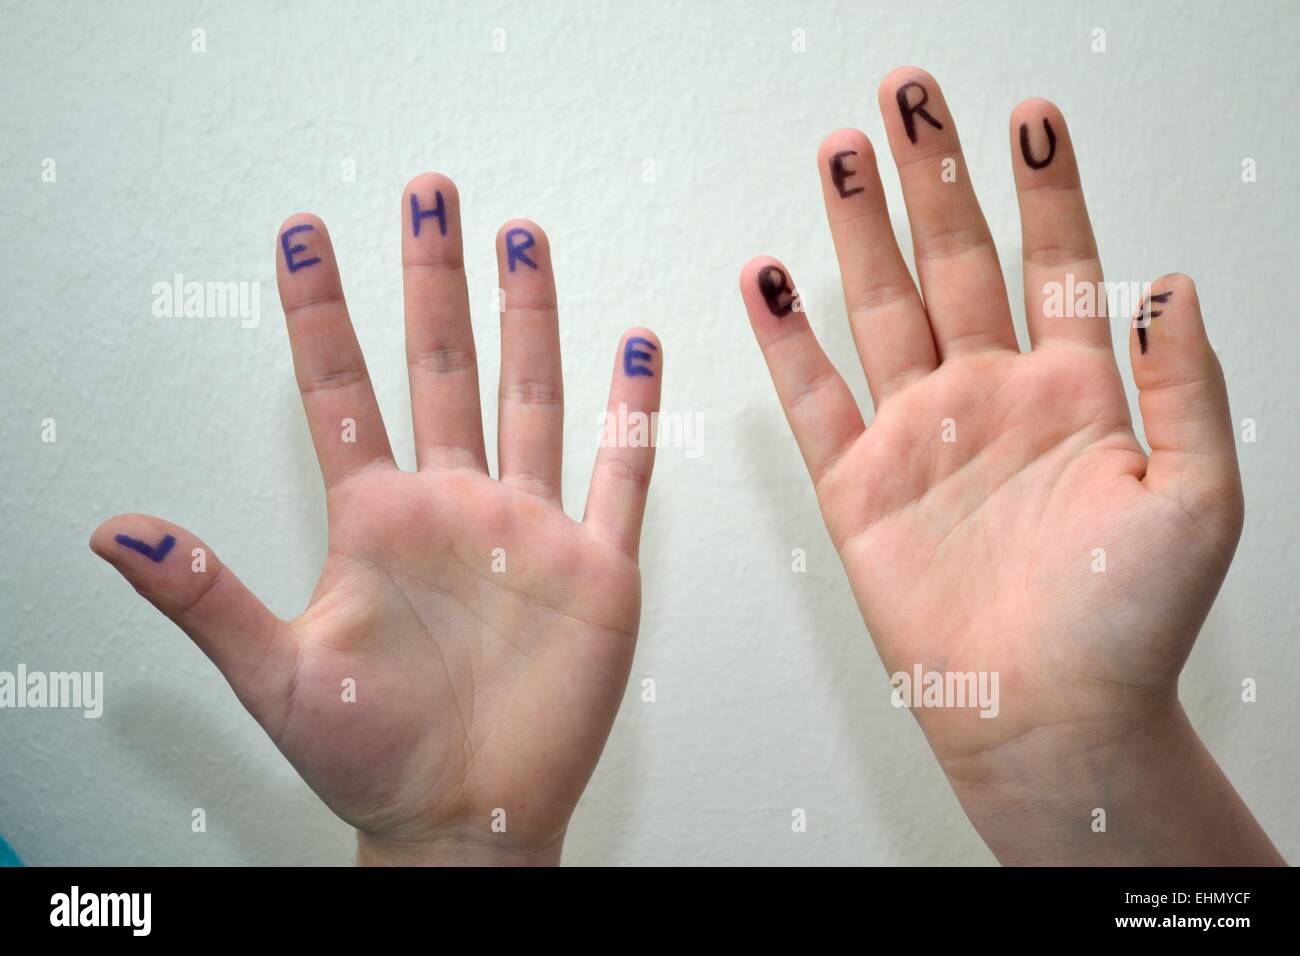 Symbolic hands on training Stock Photo